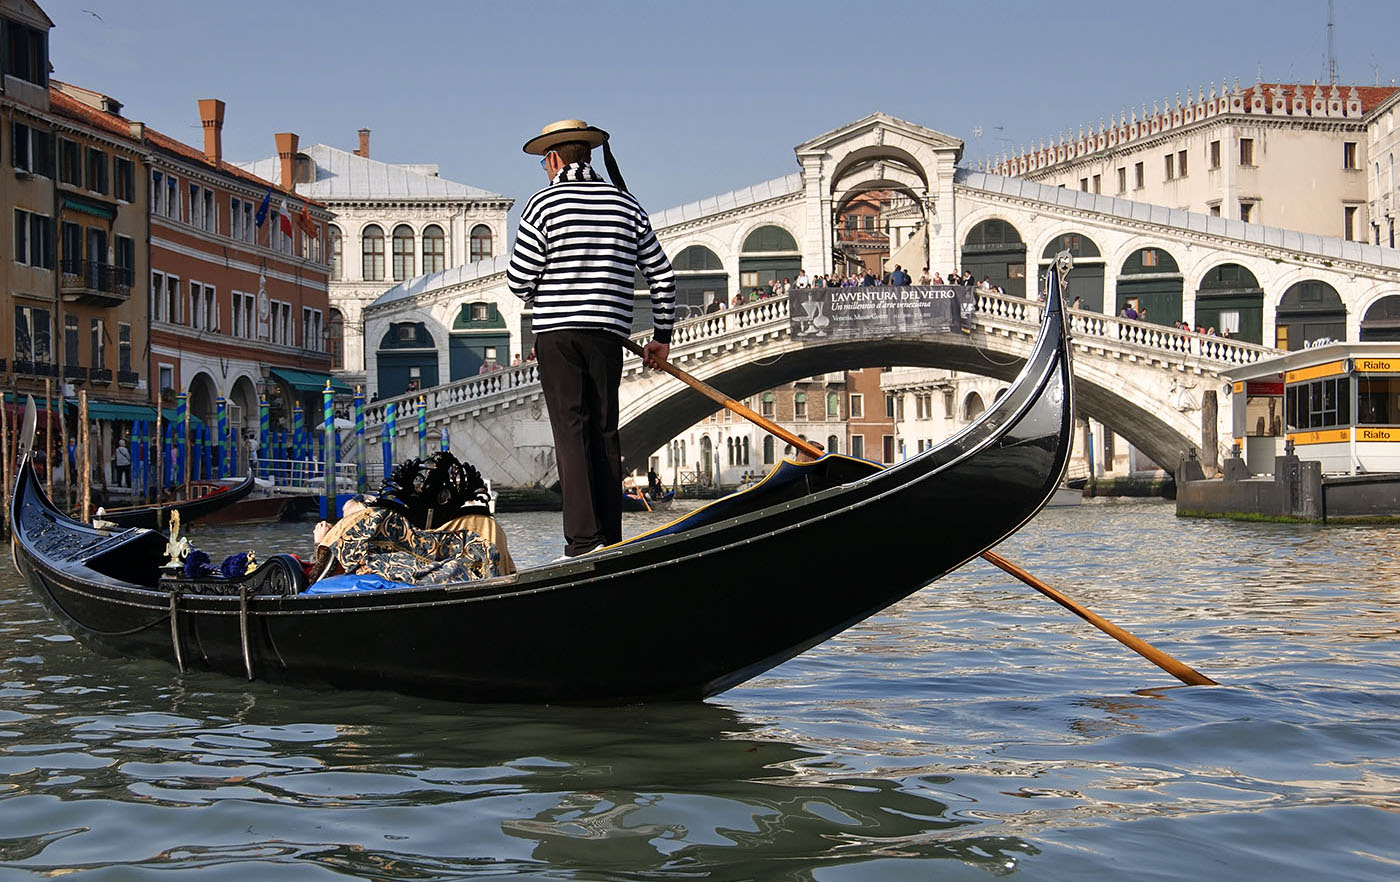 Un week-end à Venise